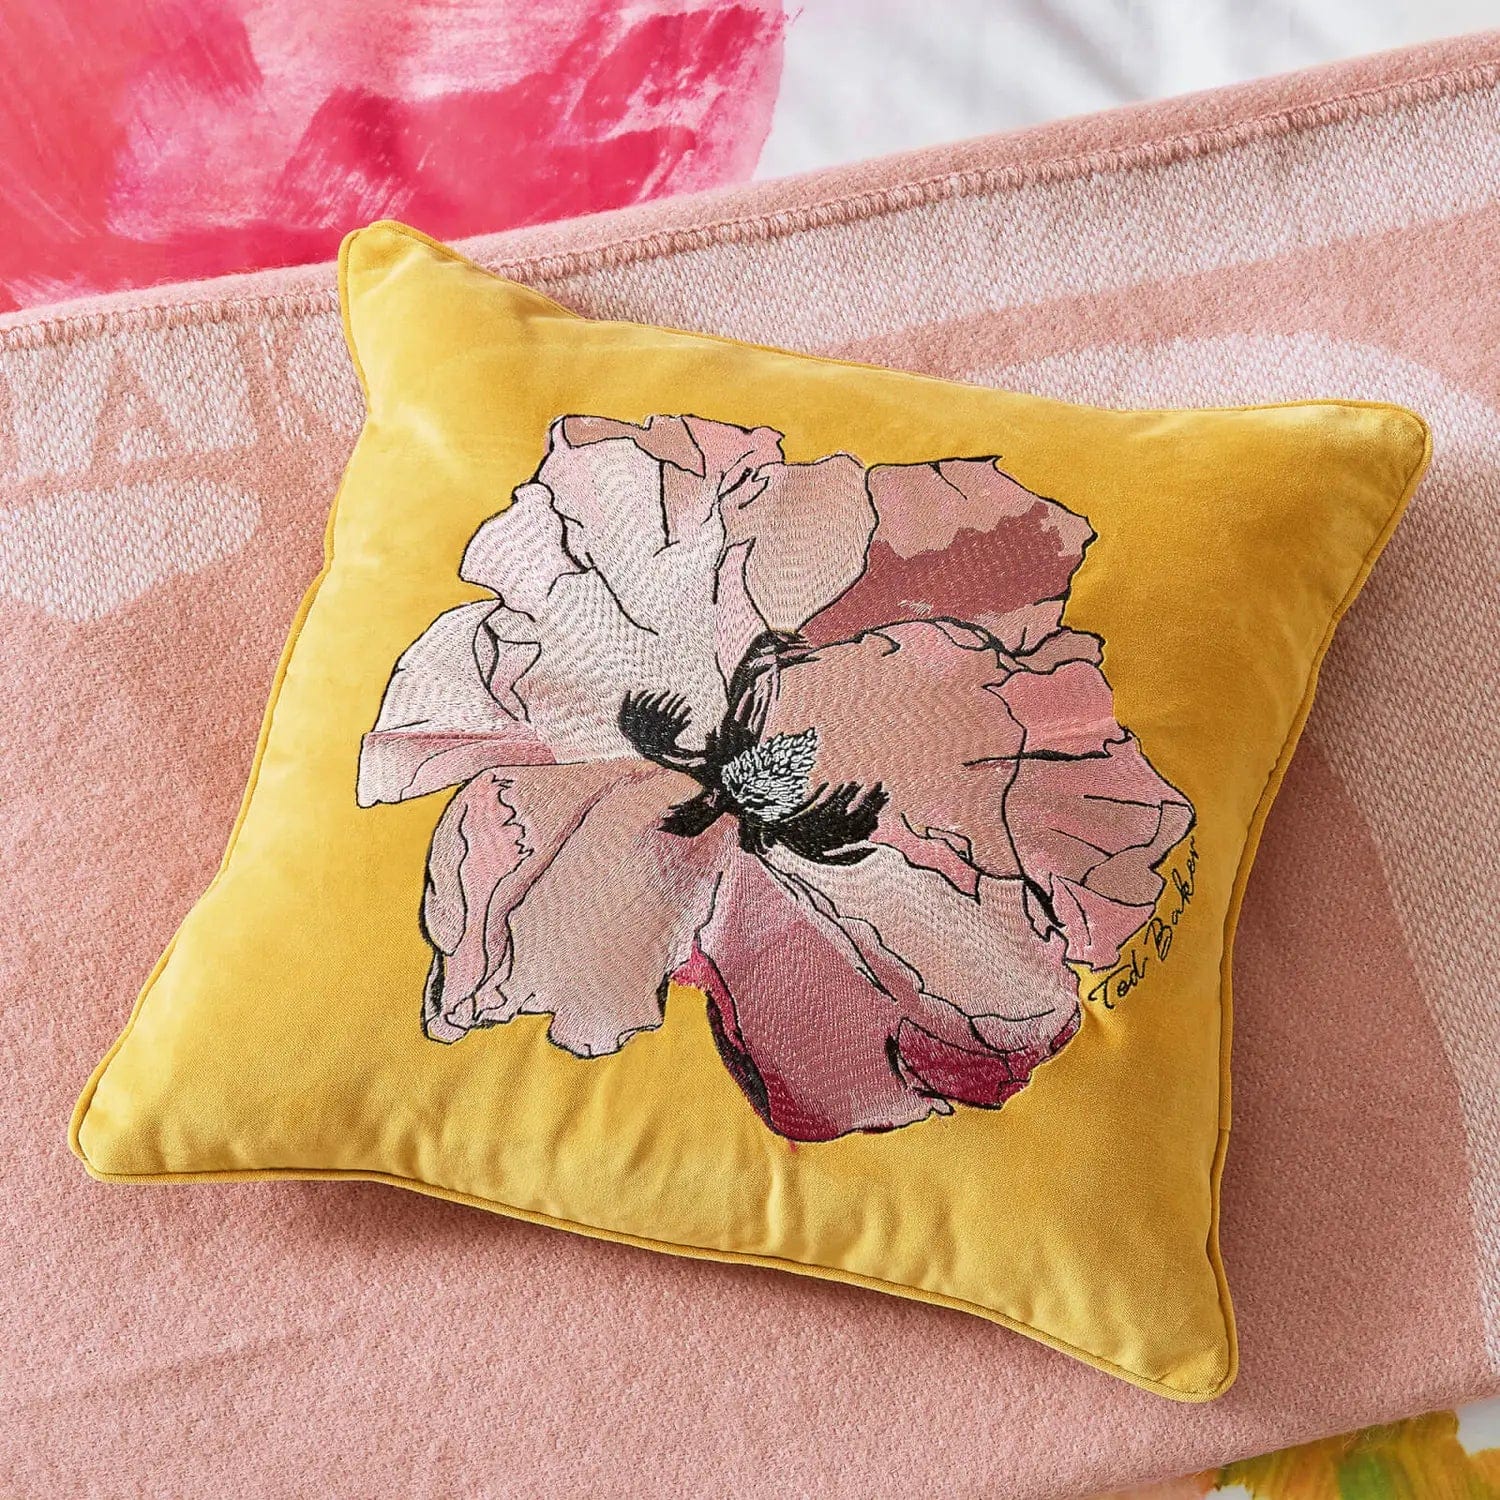 Ted Baker Art Floral Cotton Velvet Cushion in Gold 45x45cm